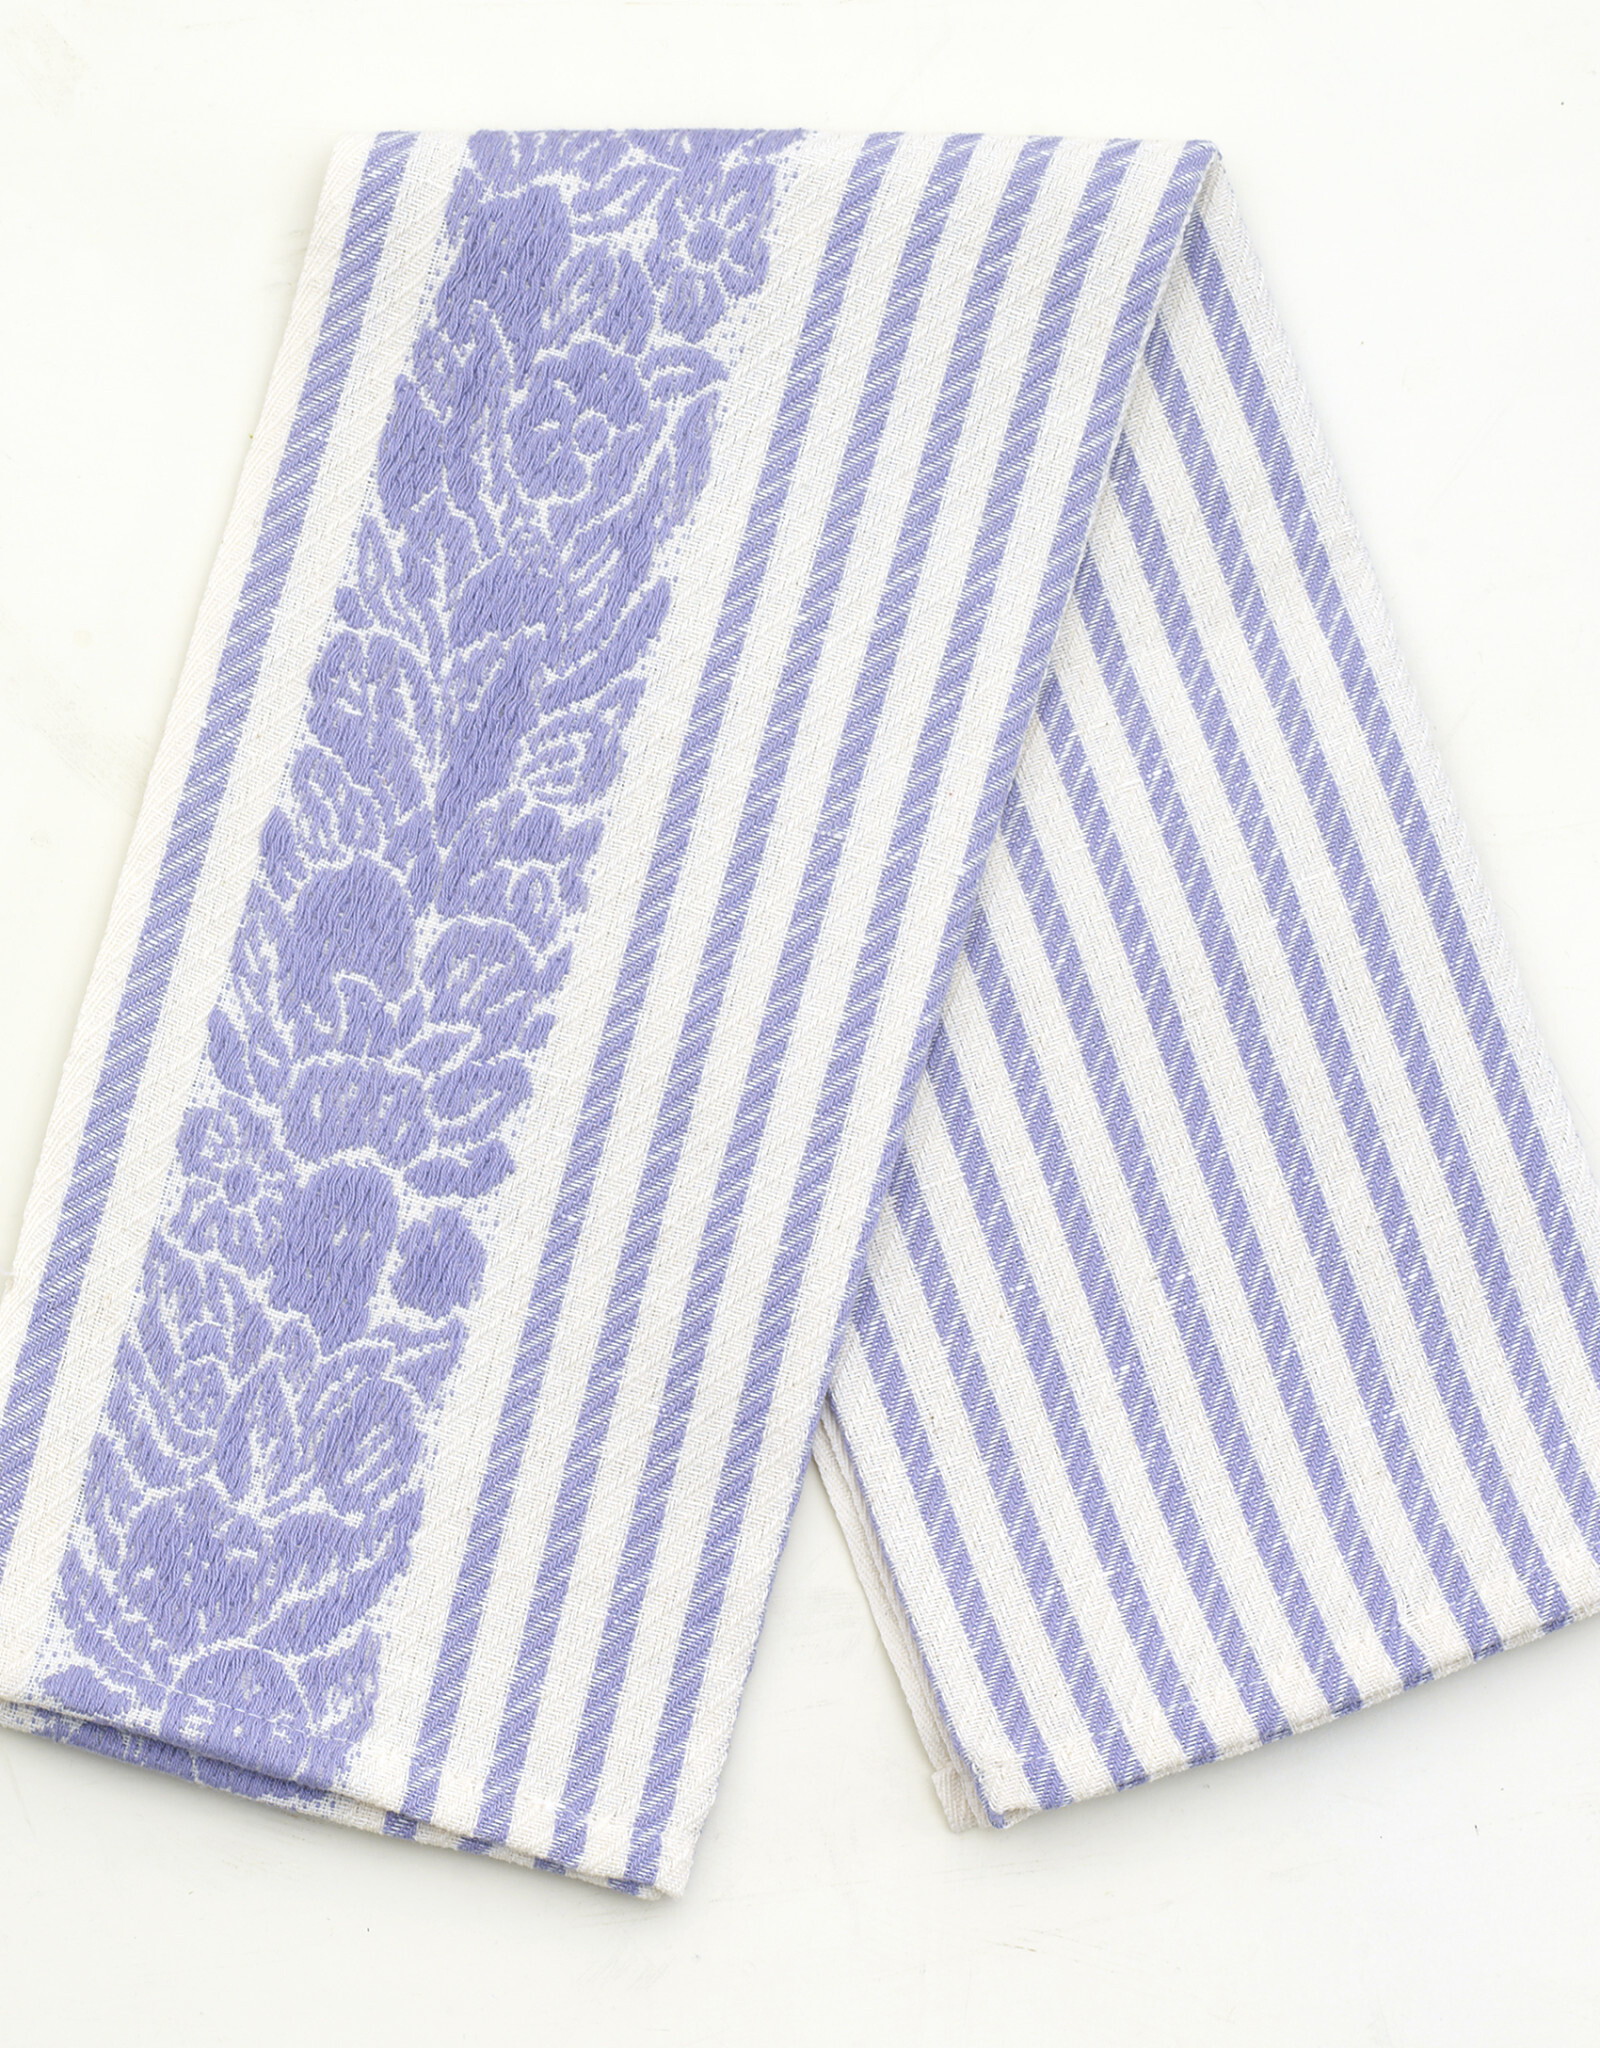 Busatti Italy Mirto - Kitchen towel Lavender - 60% Linen 40% Cotton  25" x 28"